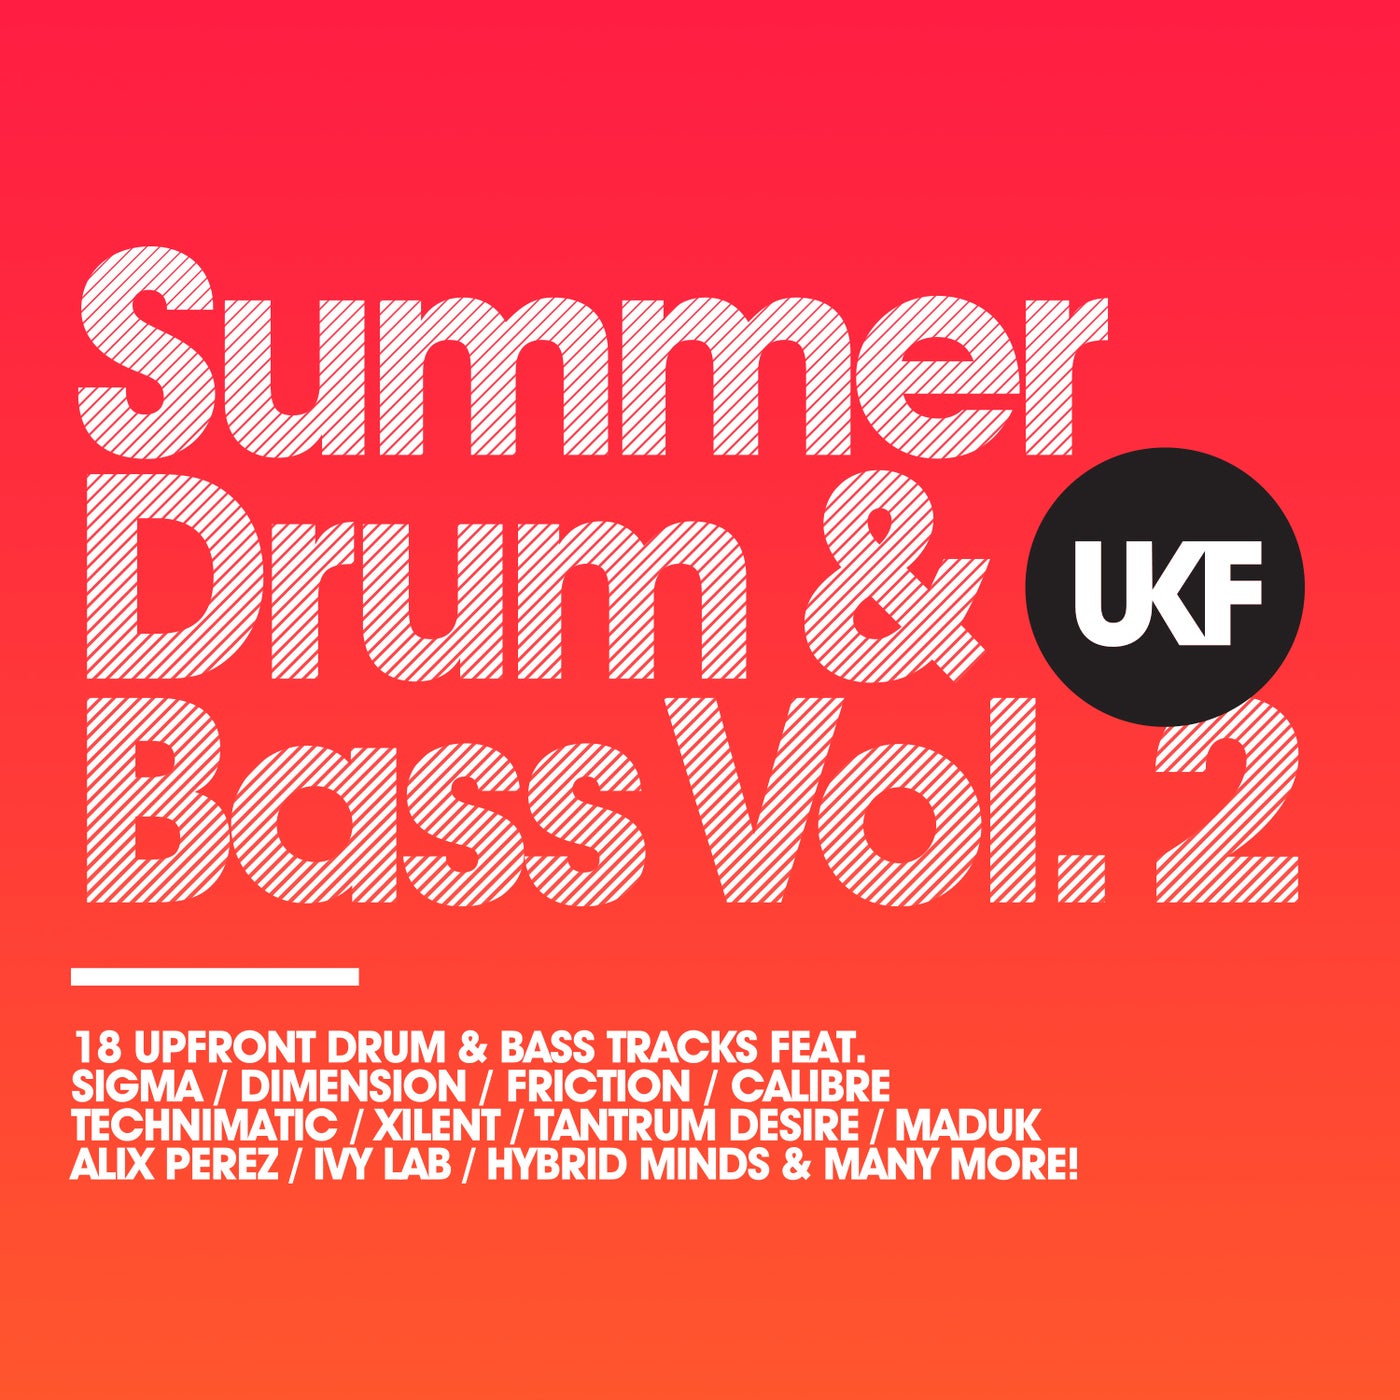 UKF Summer Drum & Bass, Vol. 2